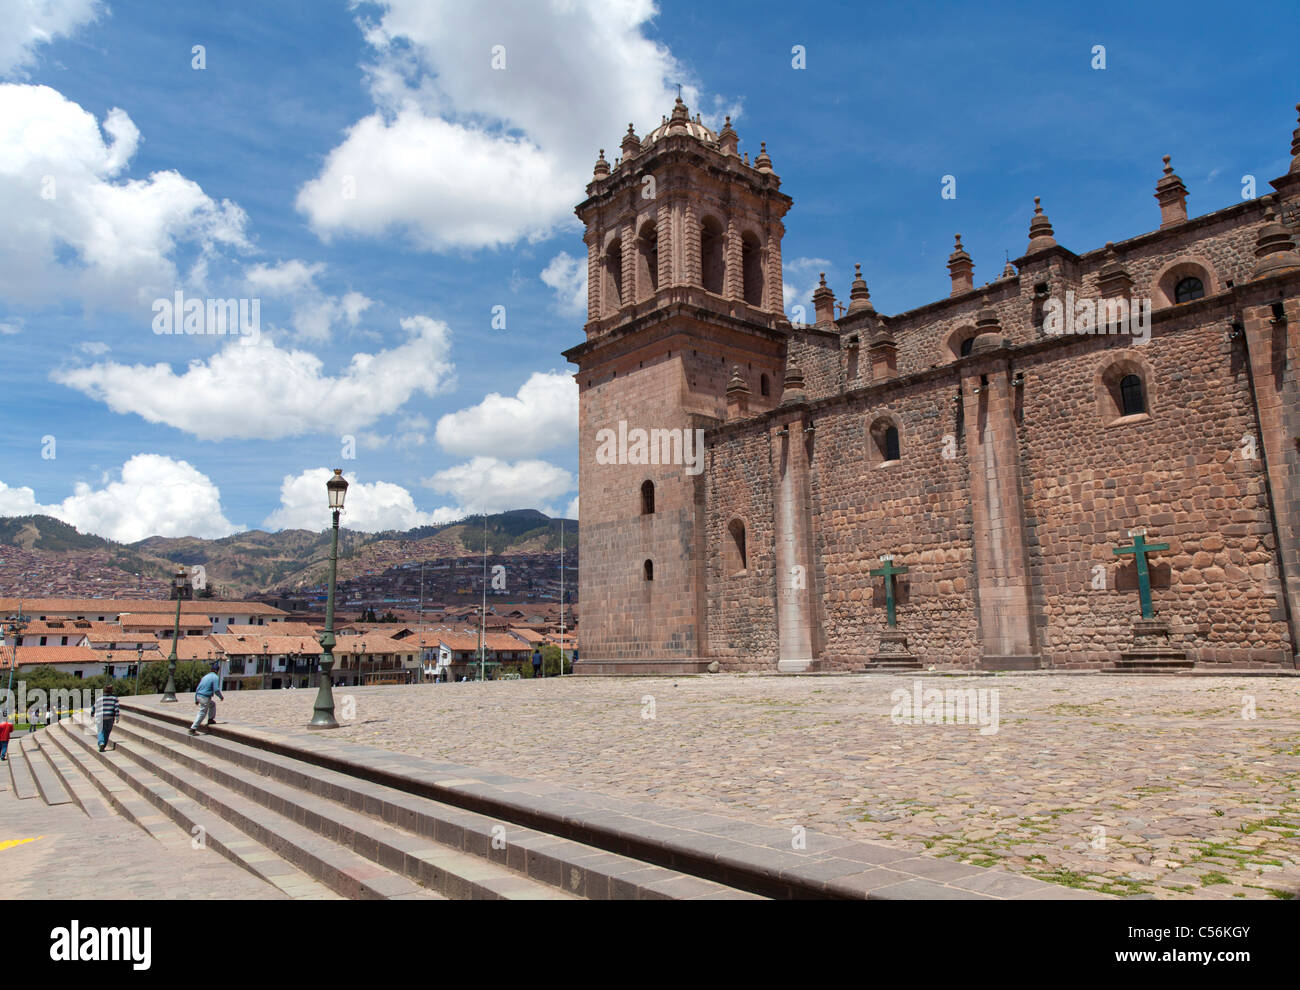 Cathédrale de Saint-Domingue, également connu sous le nom de Cusco Cathedral Banque D'Images